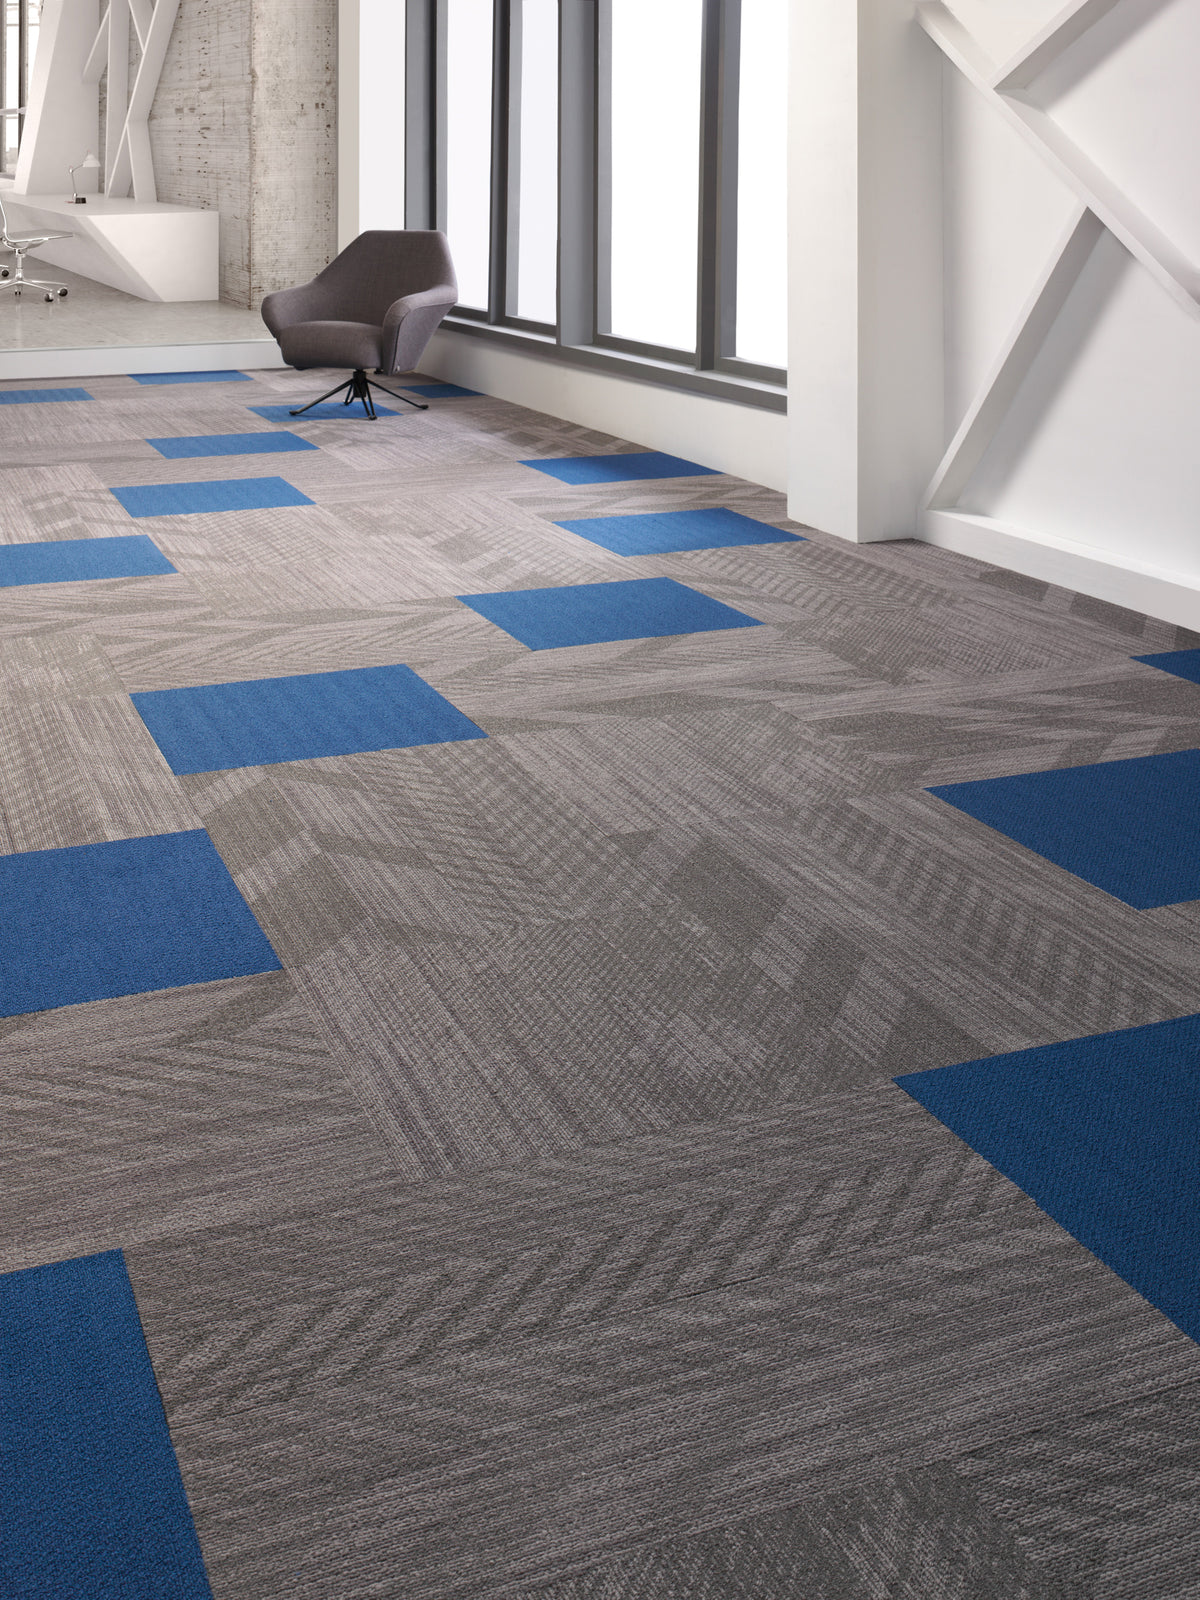 Mohawk Group - Colorbeat - Commercial Carpet Tile - Aubergine